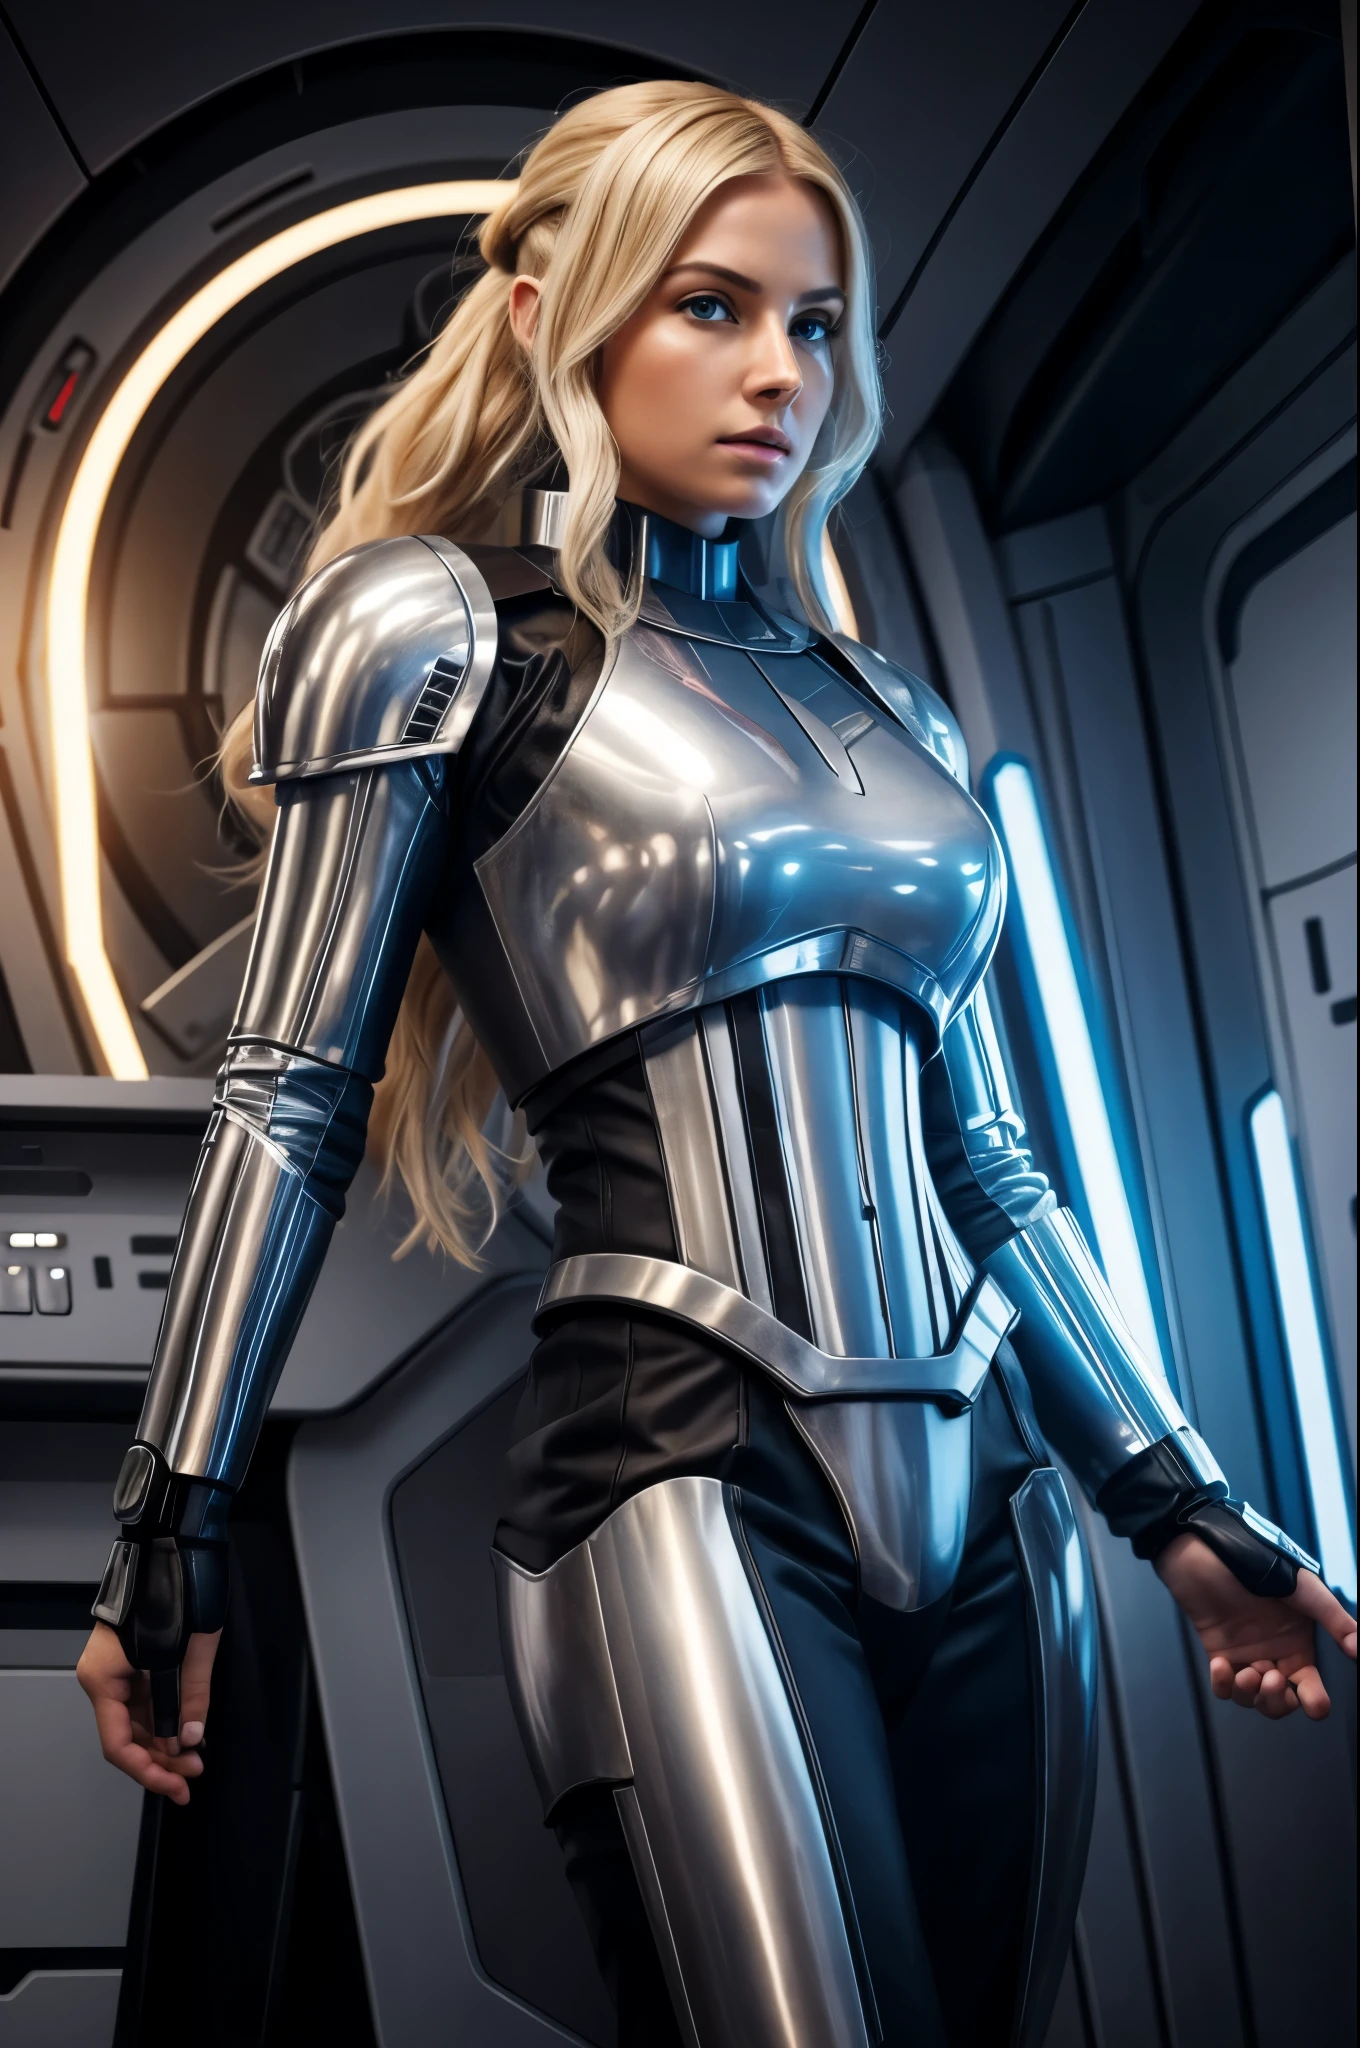 dort eine schöne blonde Frau in einem Star Wars Kostüm in einem Raumschiff, eine schwarze Sturmtruppenrüstung aus Star Wars, Ganzkörperbild, lange Beine, schmale Taille, Gesicht mit Sommersprossen, goldblondes Haar, blaue Augen, dicke Lippen, sexy Pose, runder Hintern, futuristisches Raumschiff-Crewmitglied, weibliche Solofigur, hyperrealistisch Sci-Fi realistisch, Filmisch sehr detailliert, weiblicher Science-Fiction-Charakter, 8 k hohe Detailgenauigkeit und komplizierte, Science-Fiction-Frau, hochdetailliertes VFX-Porträt von, Science-Fiction mit vielen Details